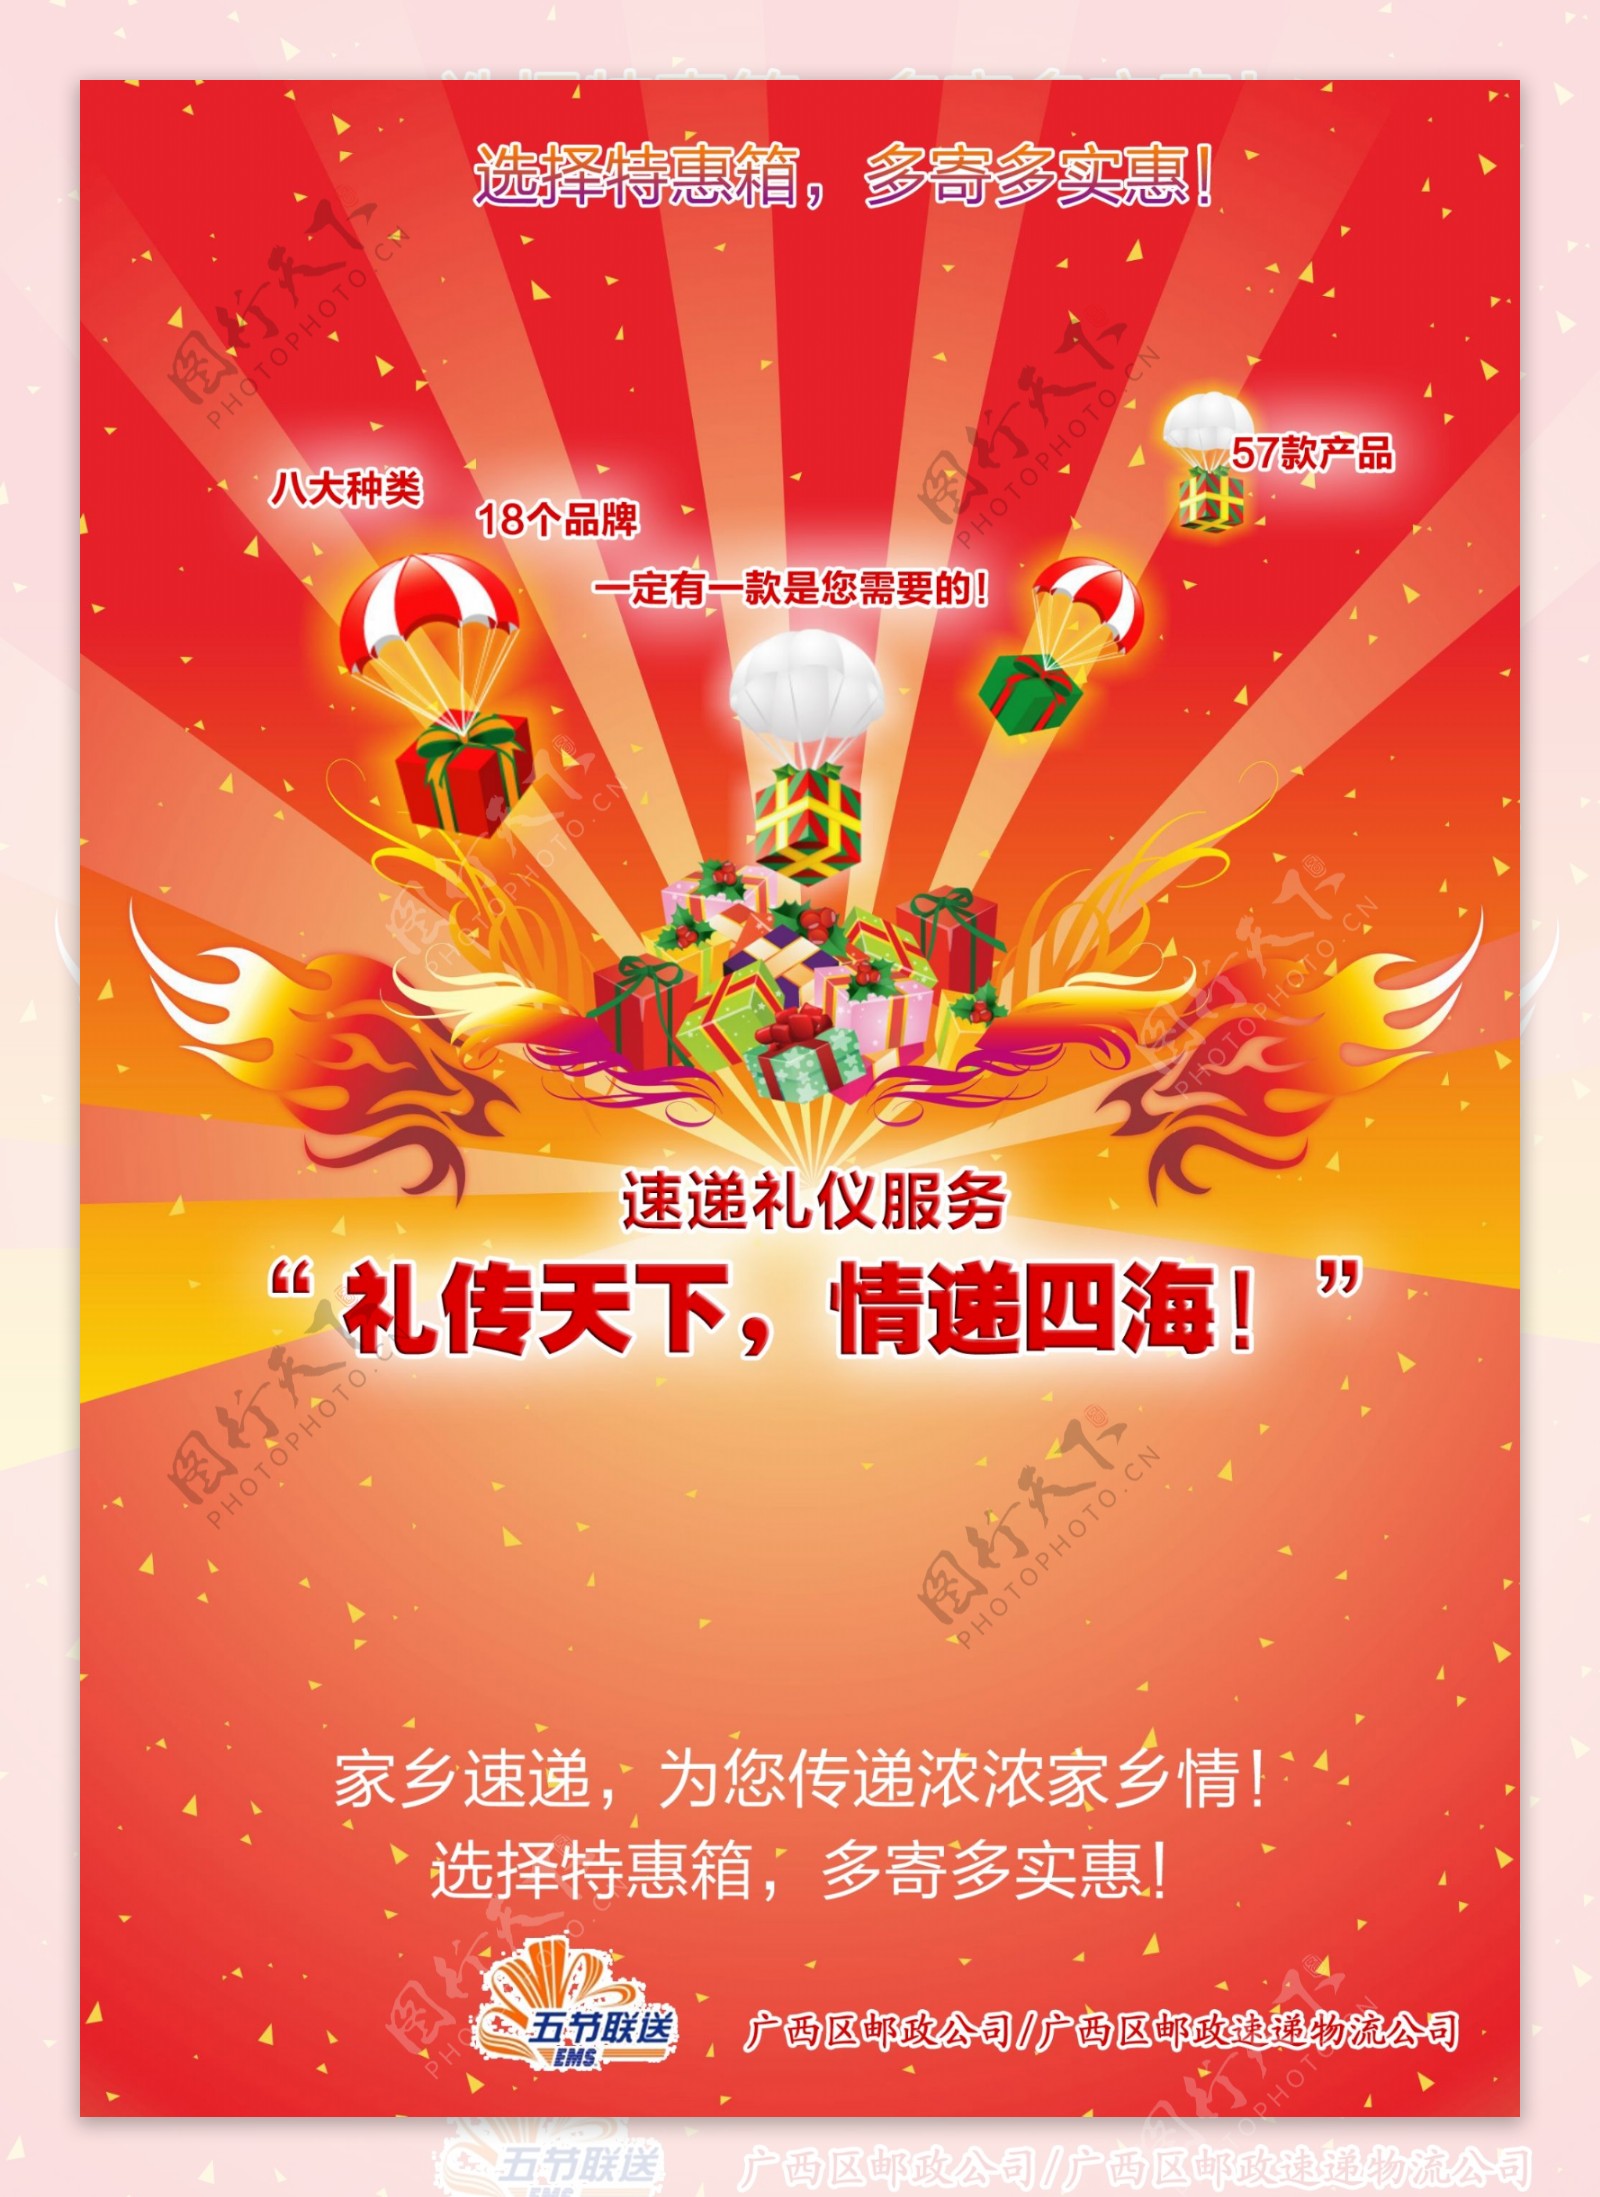 中国邮政邮局ems海报图片